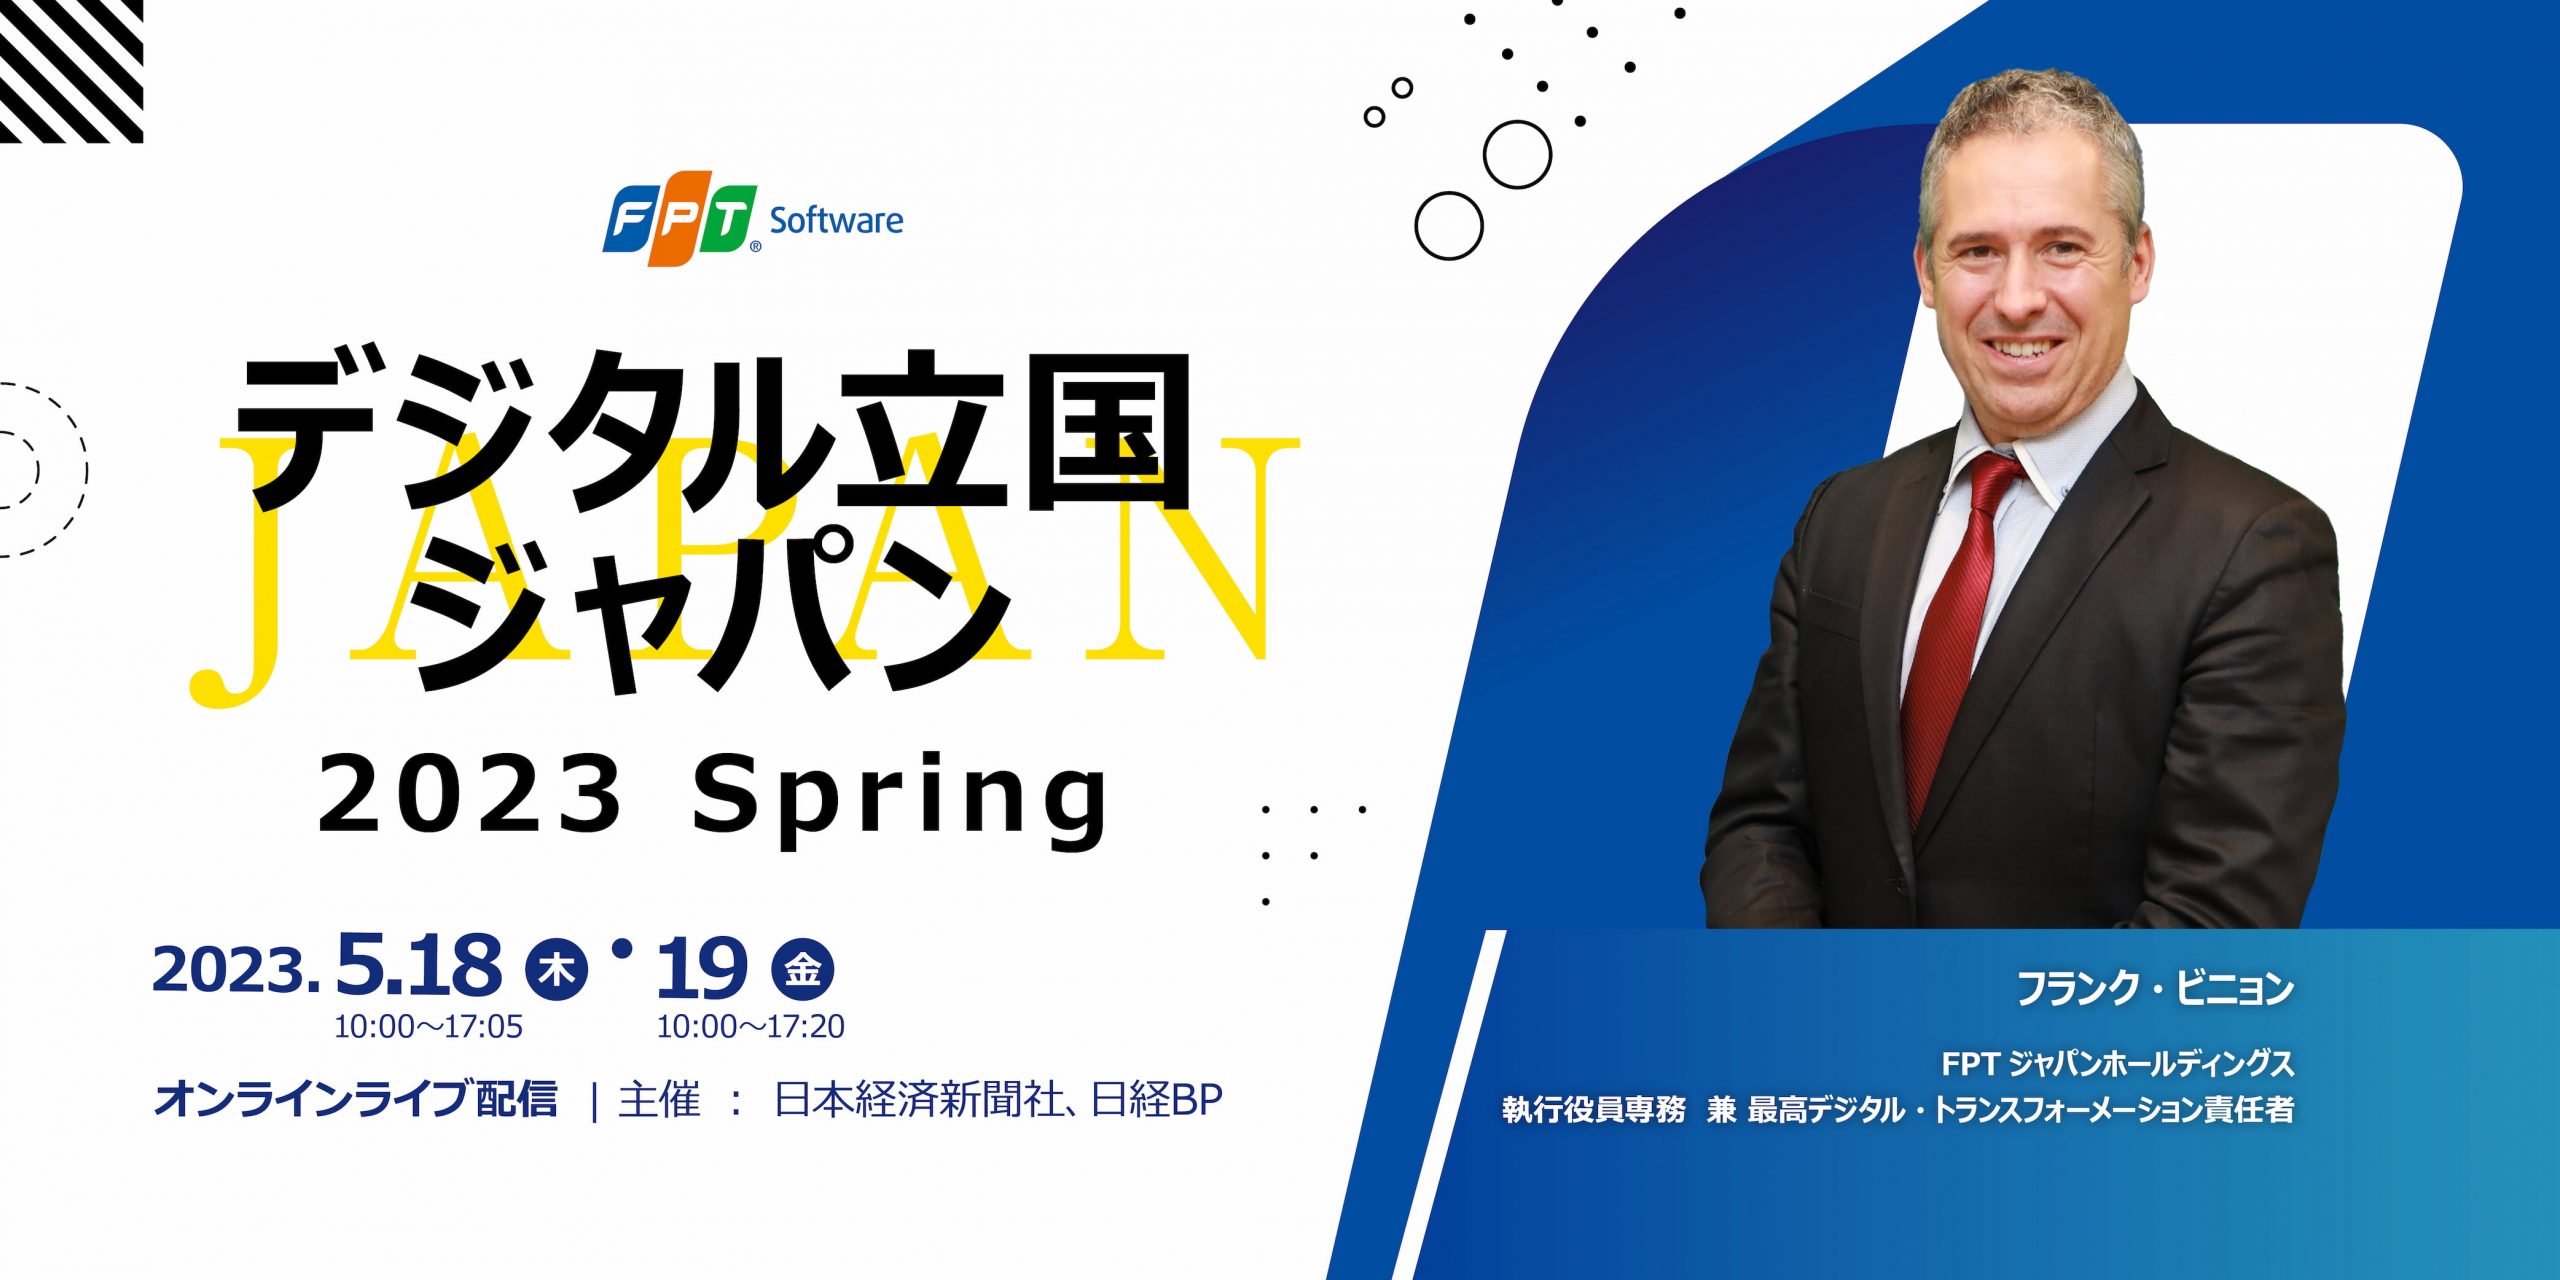 デジタル立国ジャパン 2023 Spring